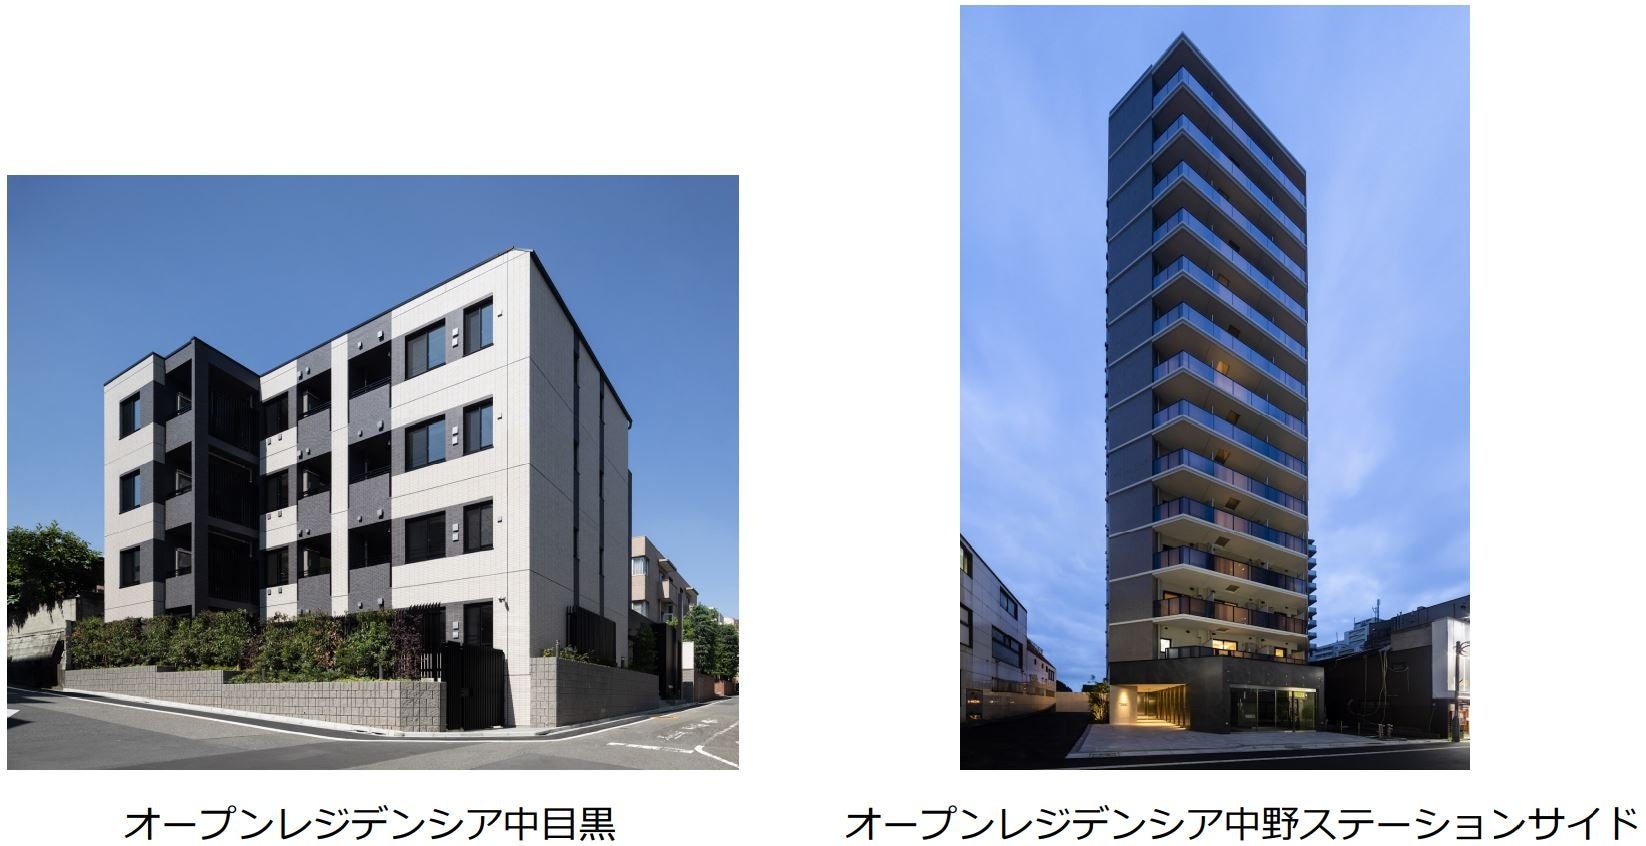 オープンハウス・ディベロップメント　2021年 東京23区コンパクトマンション供給⼾数ランキング 1位を獲得のサブ画像1